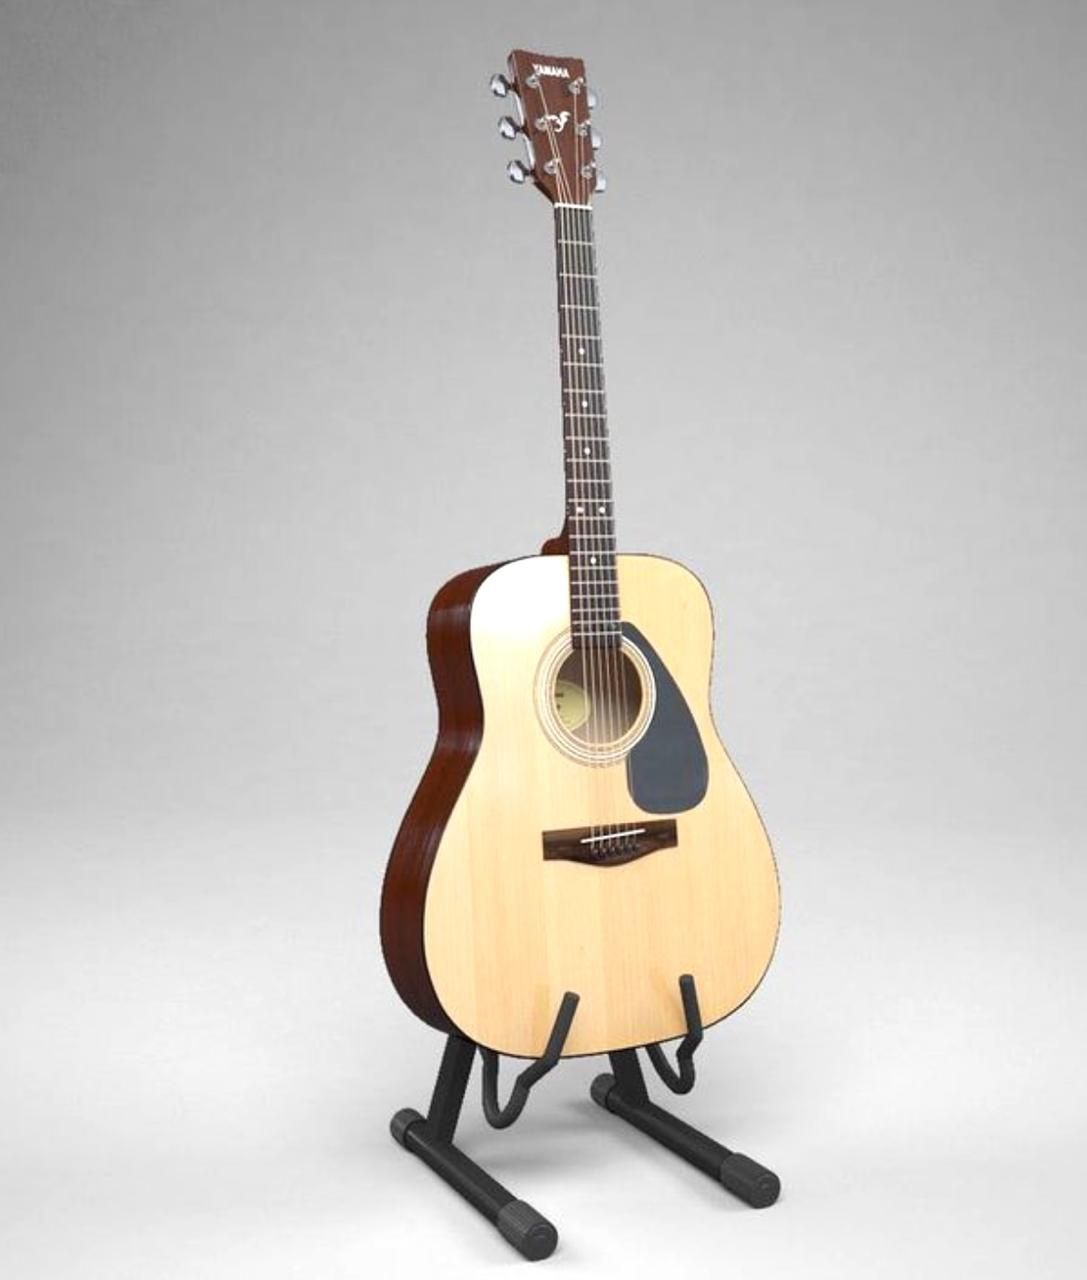 Yamaha F370 гитары в продаже